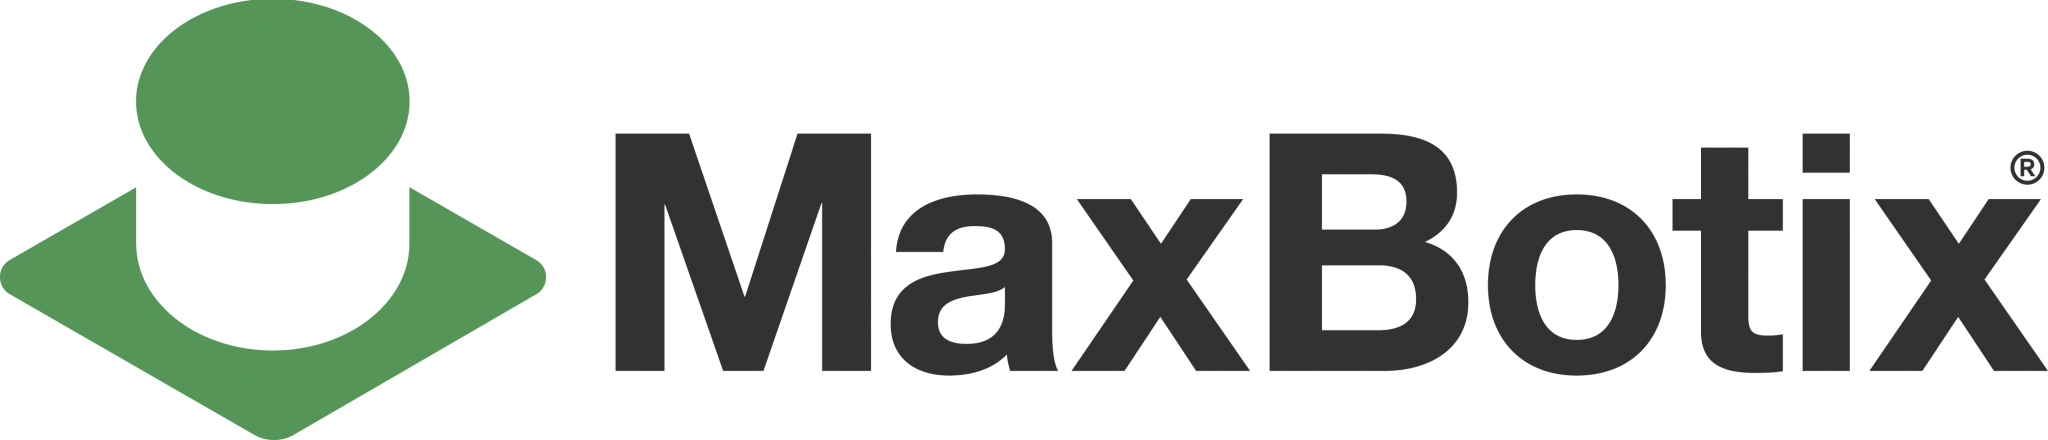 MaxBotix logo